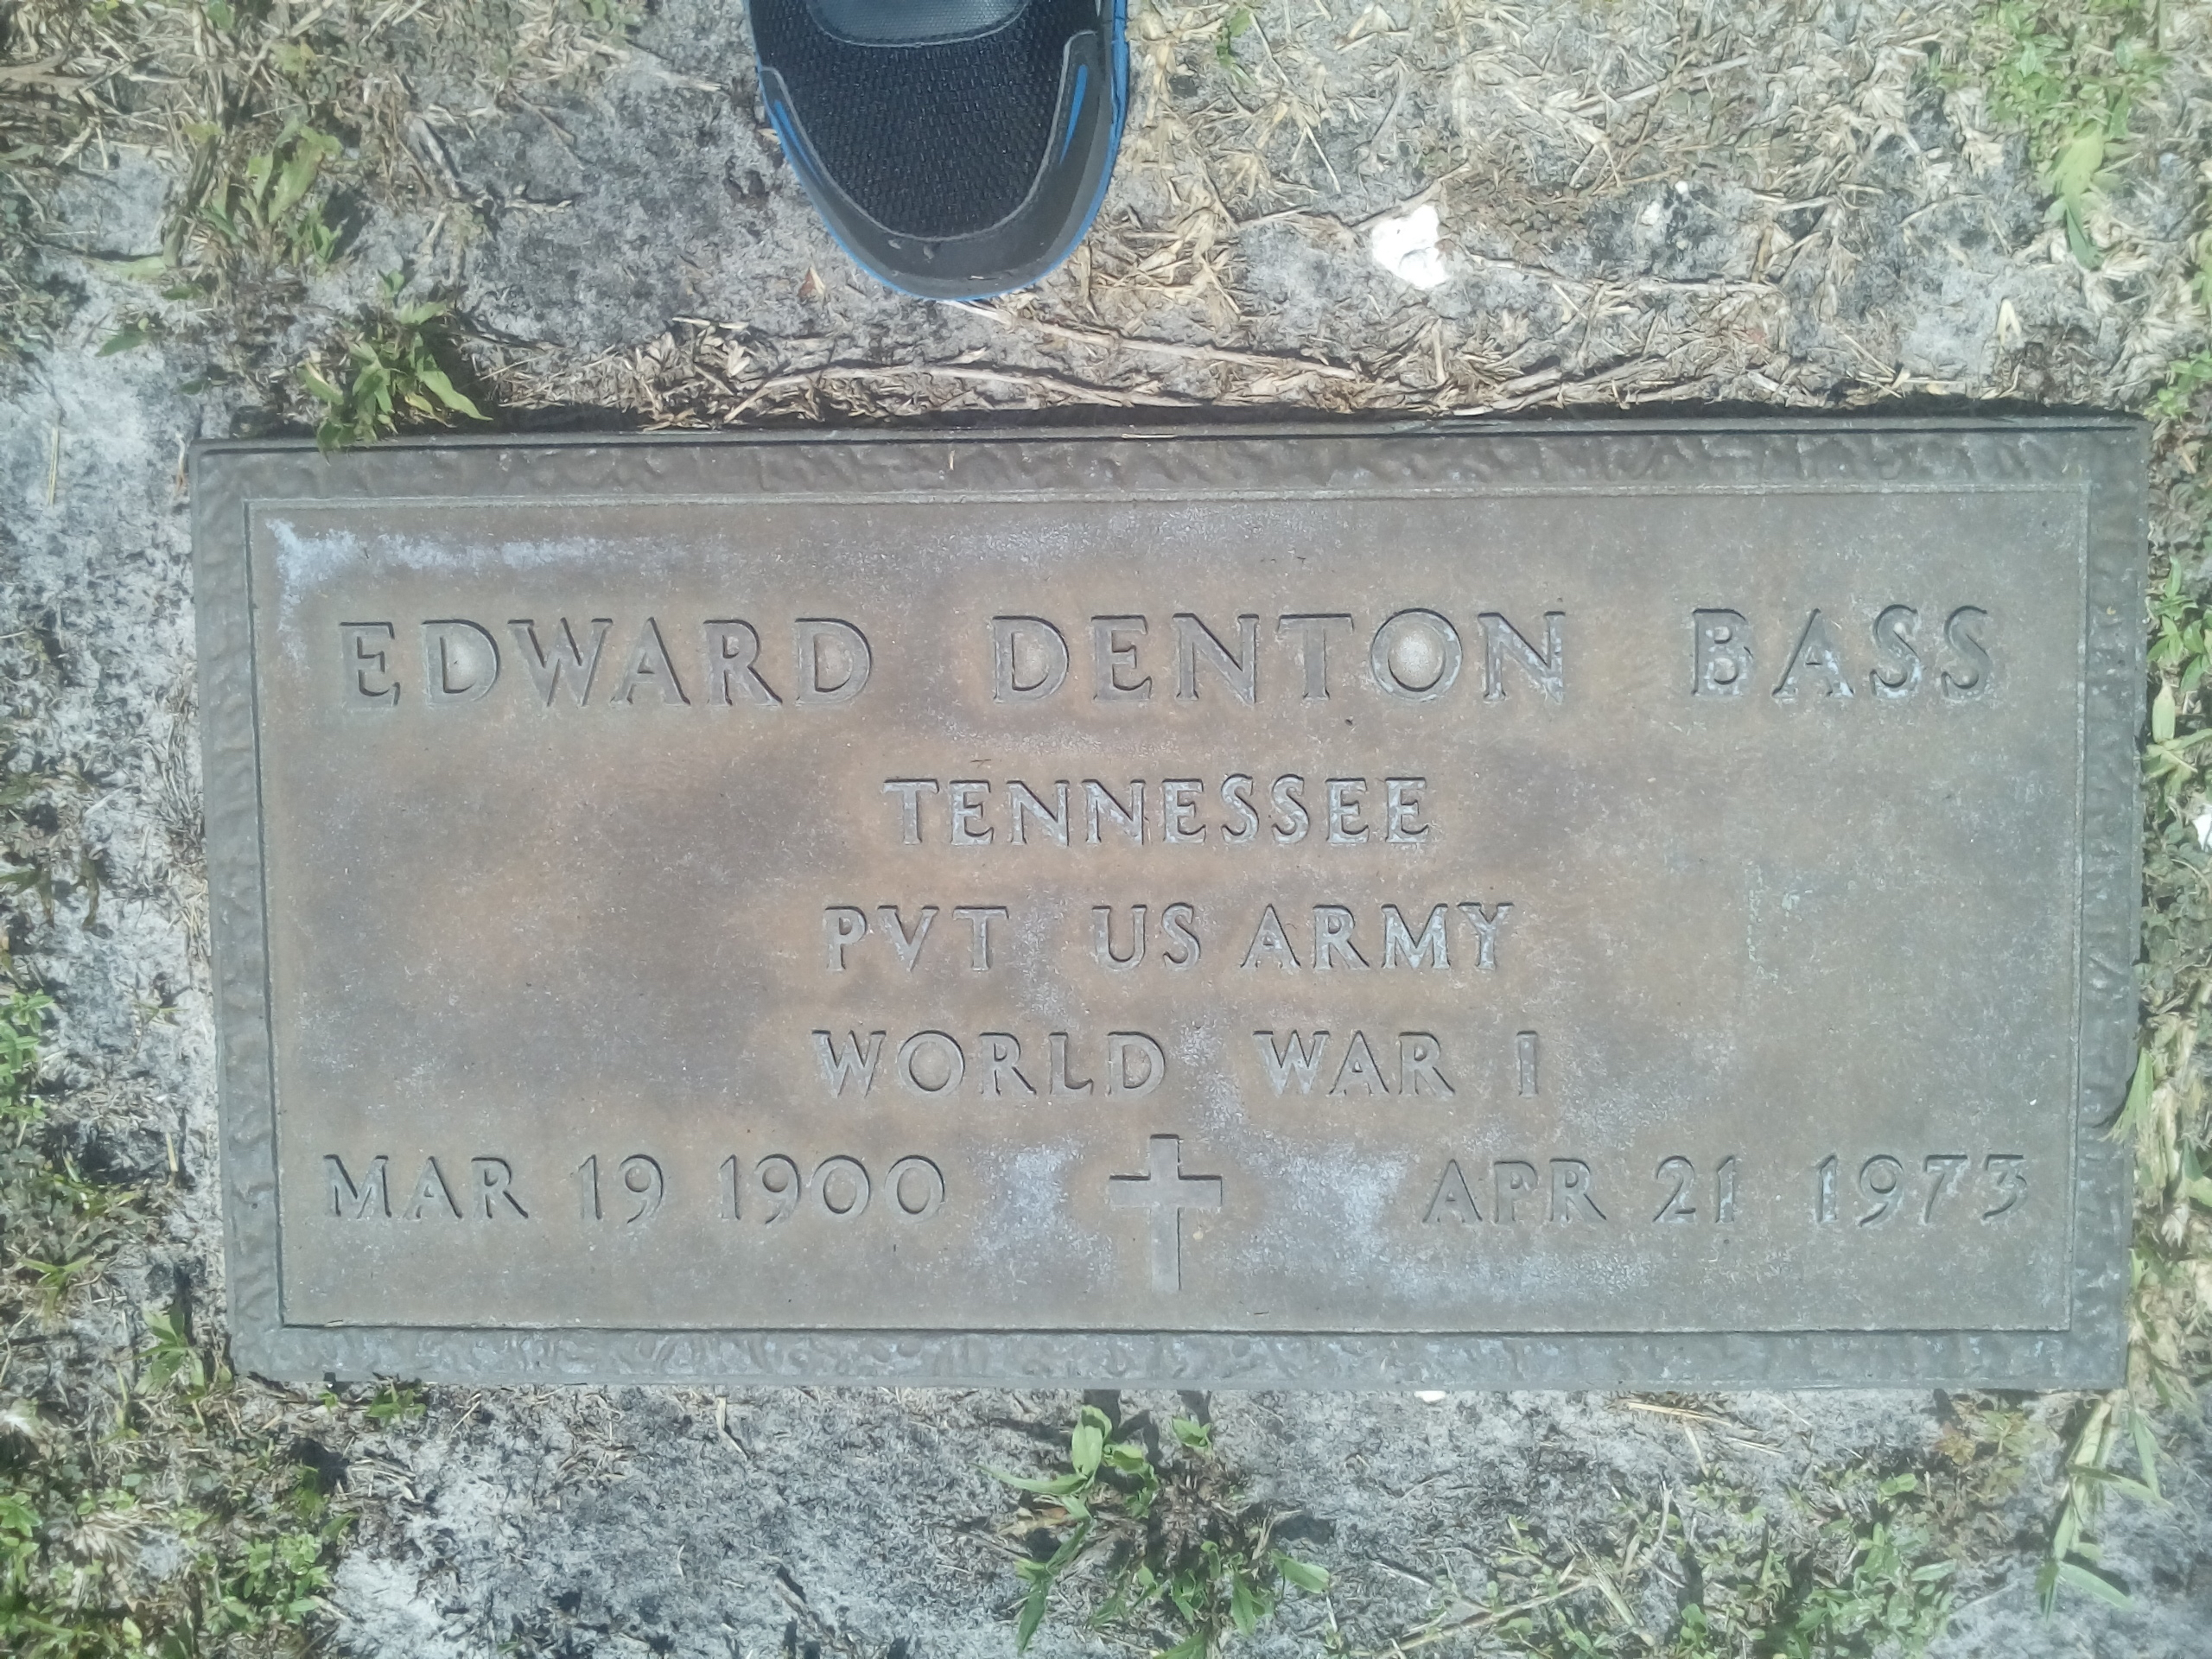 Edward Denton Bass